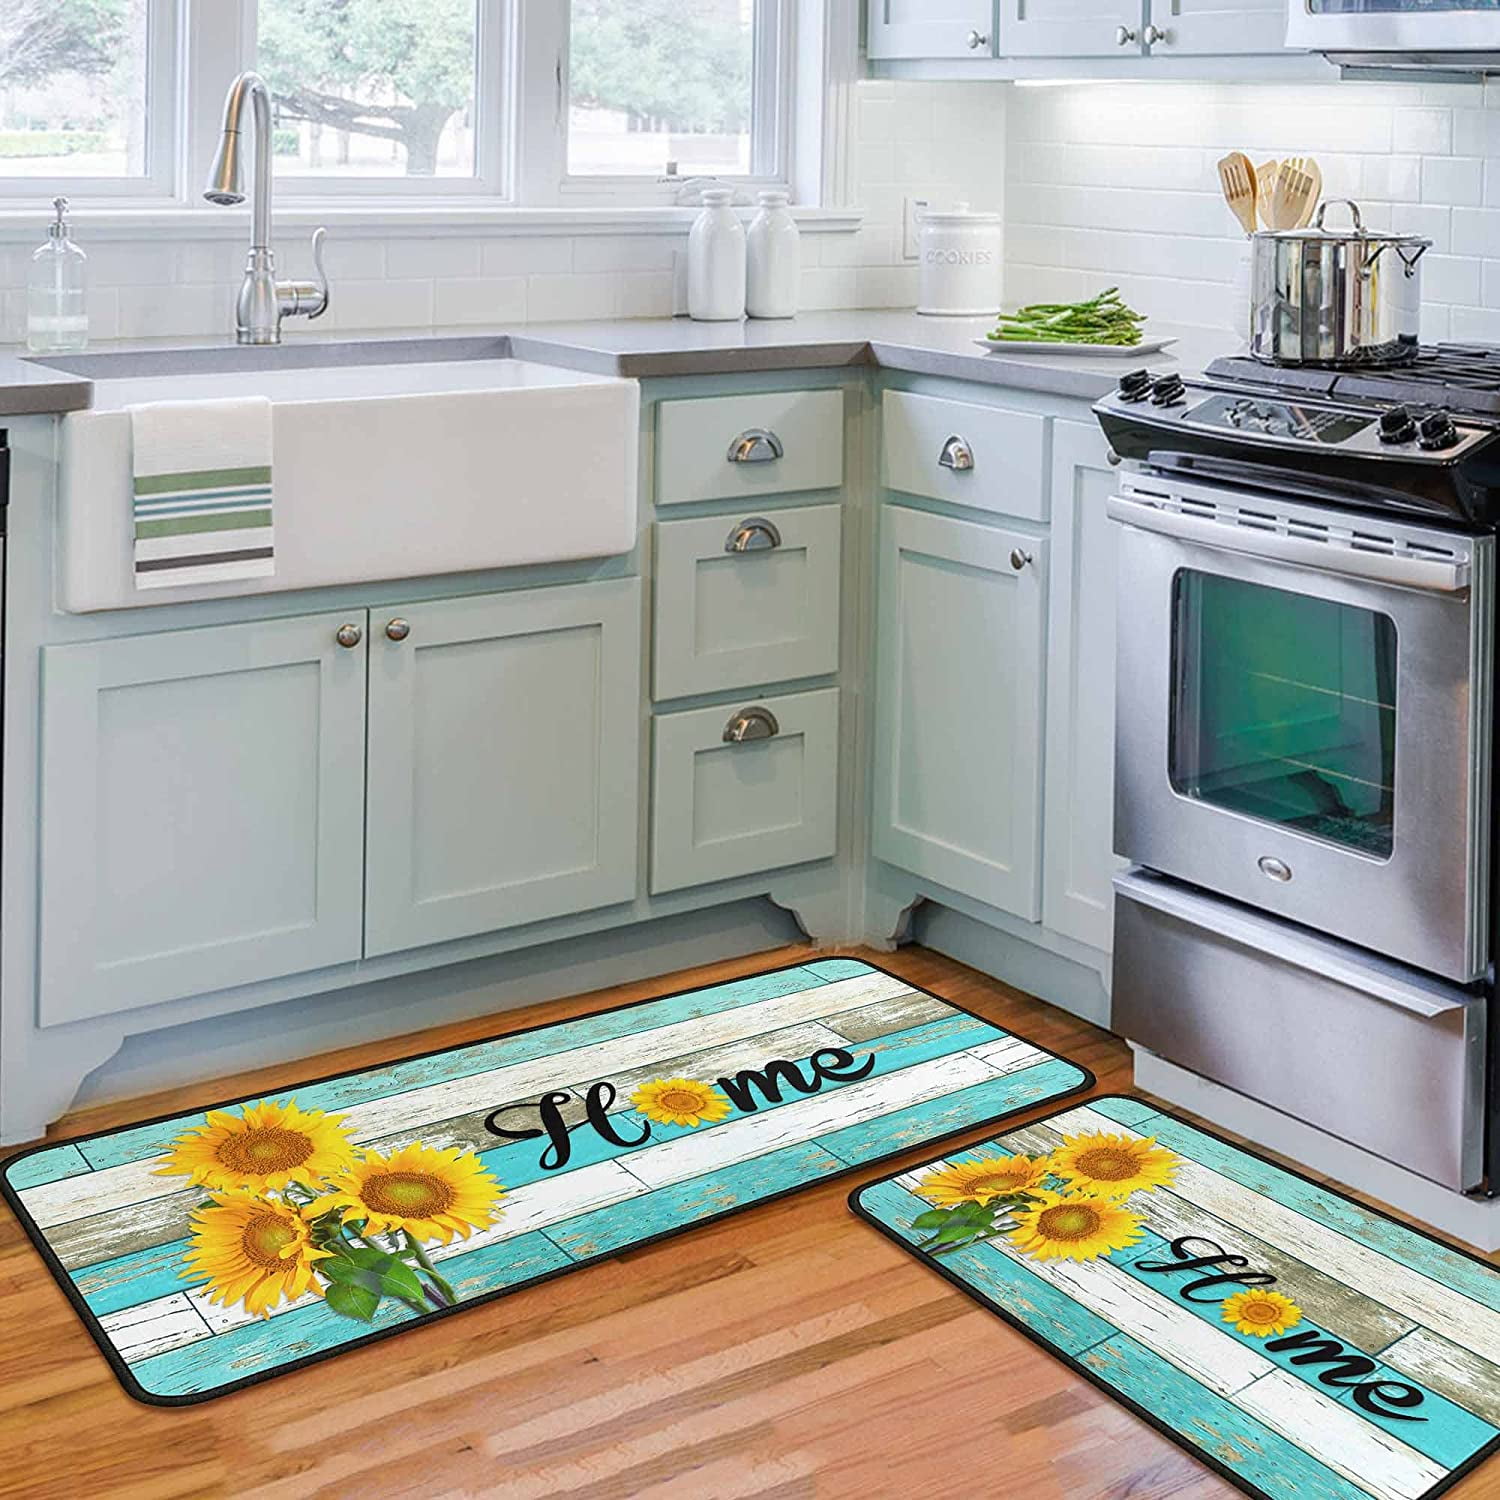 2 PCS Non-Slip Kitchen Floor Mat 20x47+20x30